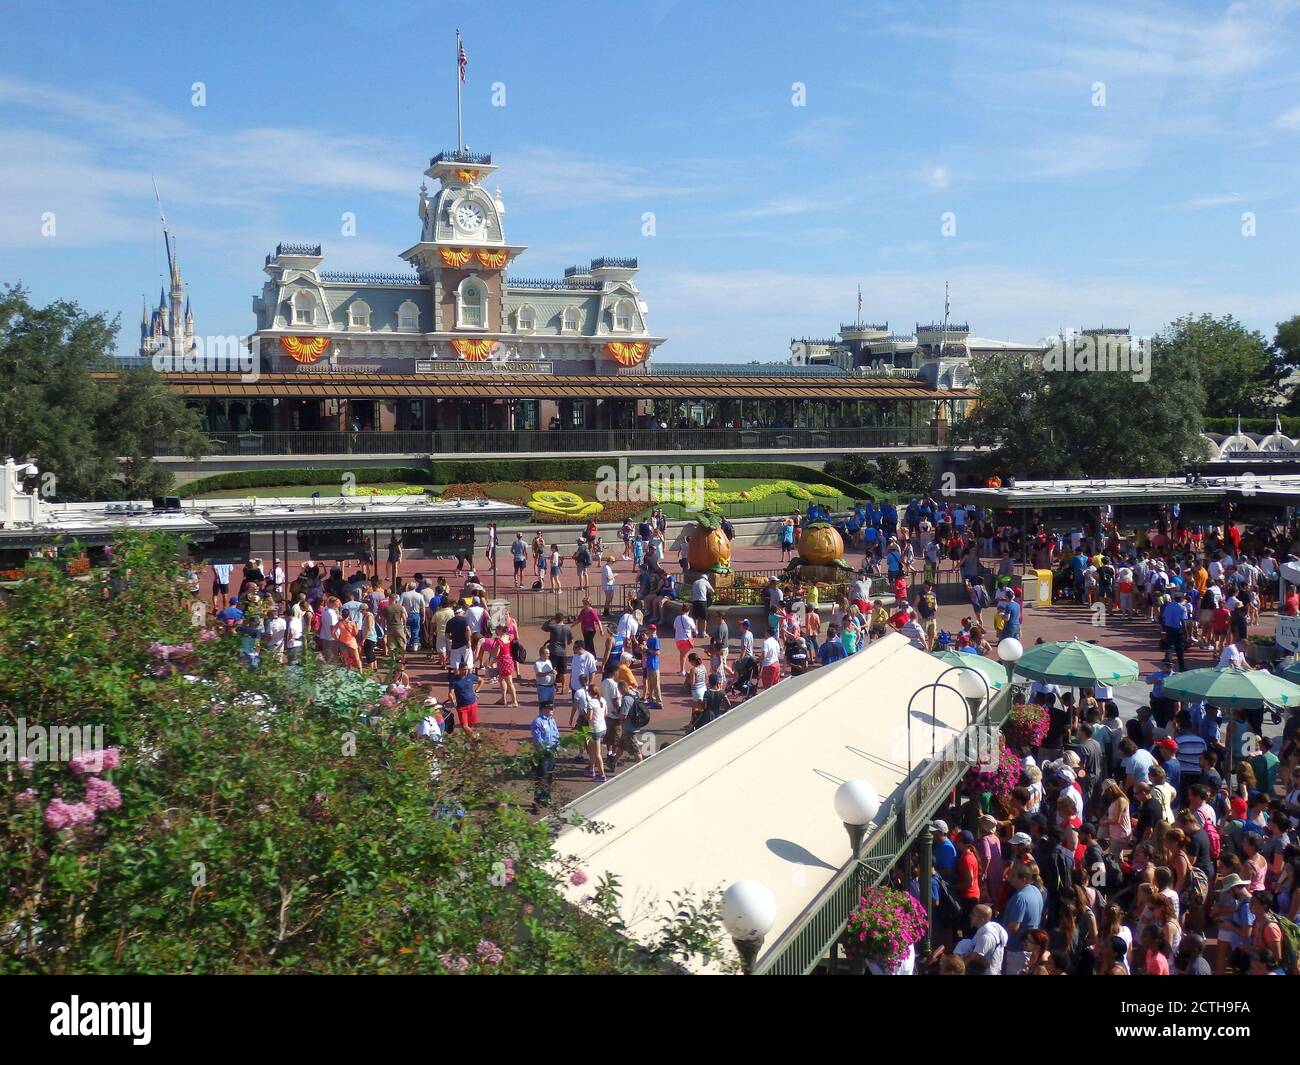 Clienti che entrano nel Magic Kingdom Park, Walt Disney World, Orlando, Florida, USA Foto Stock